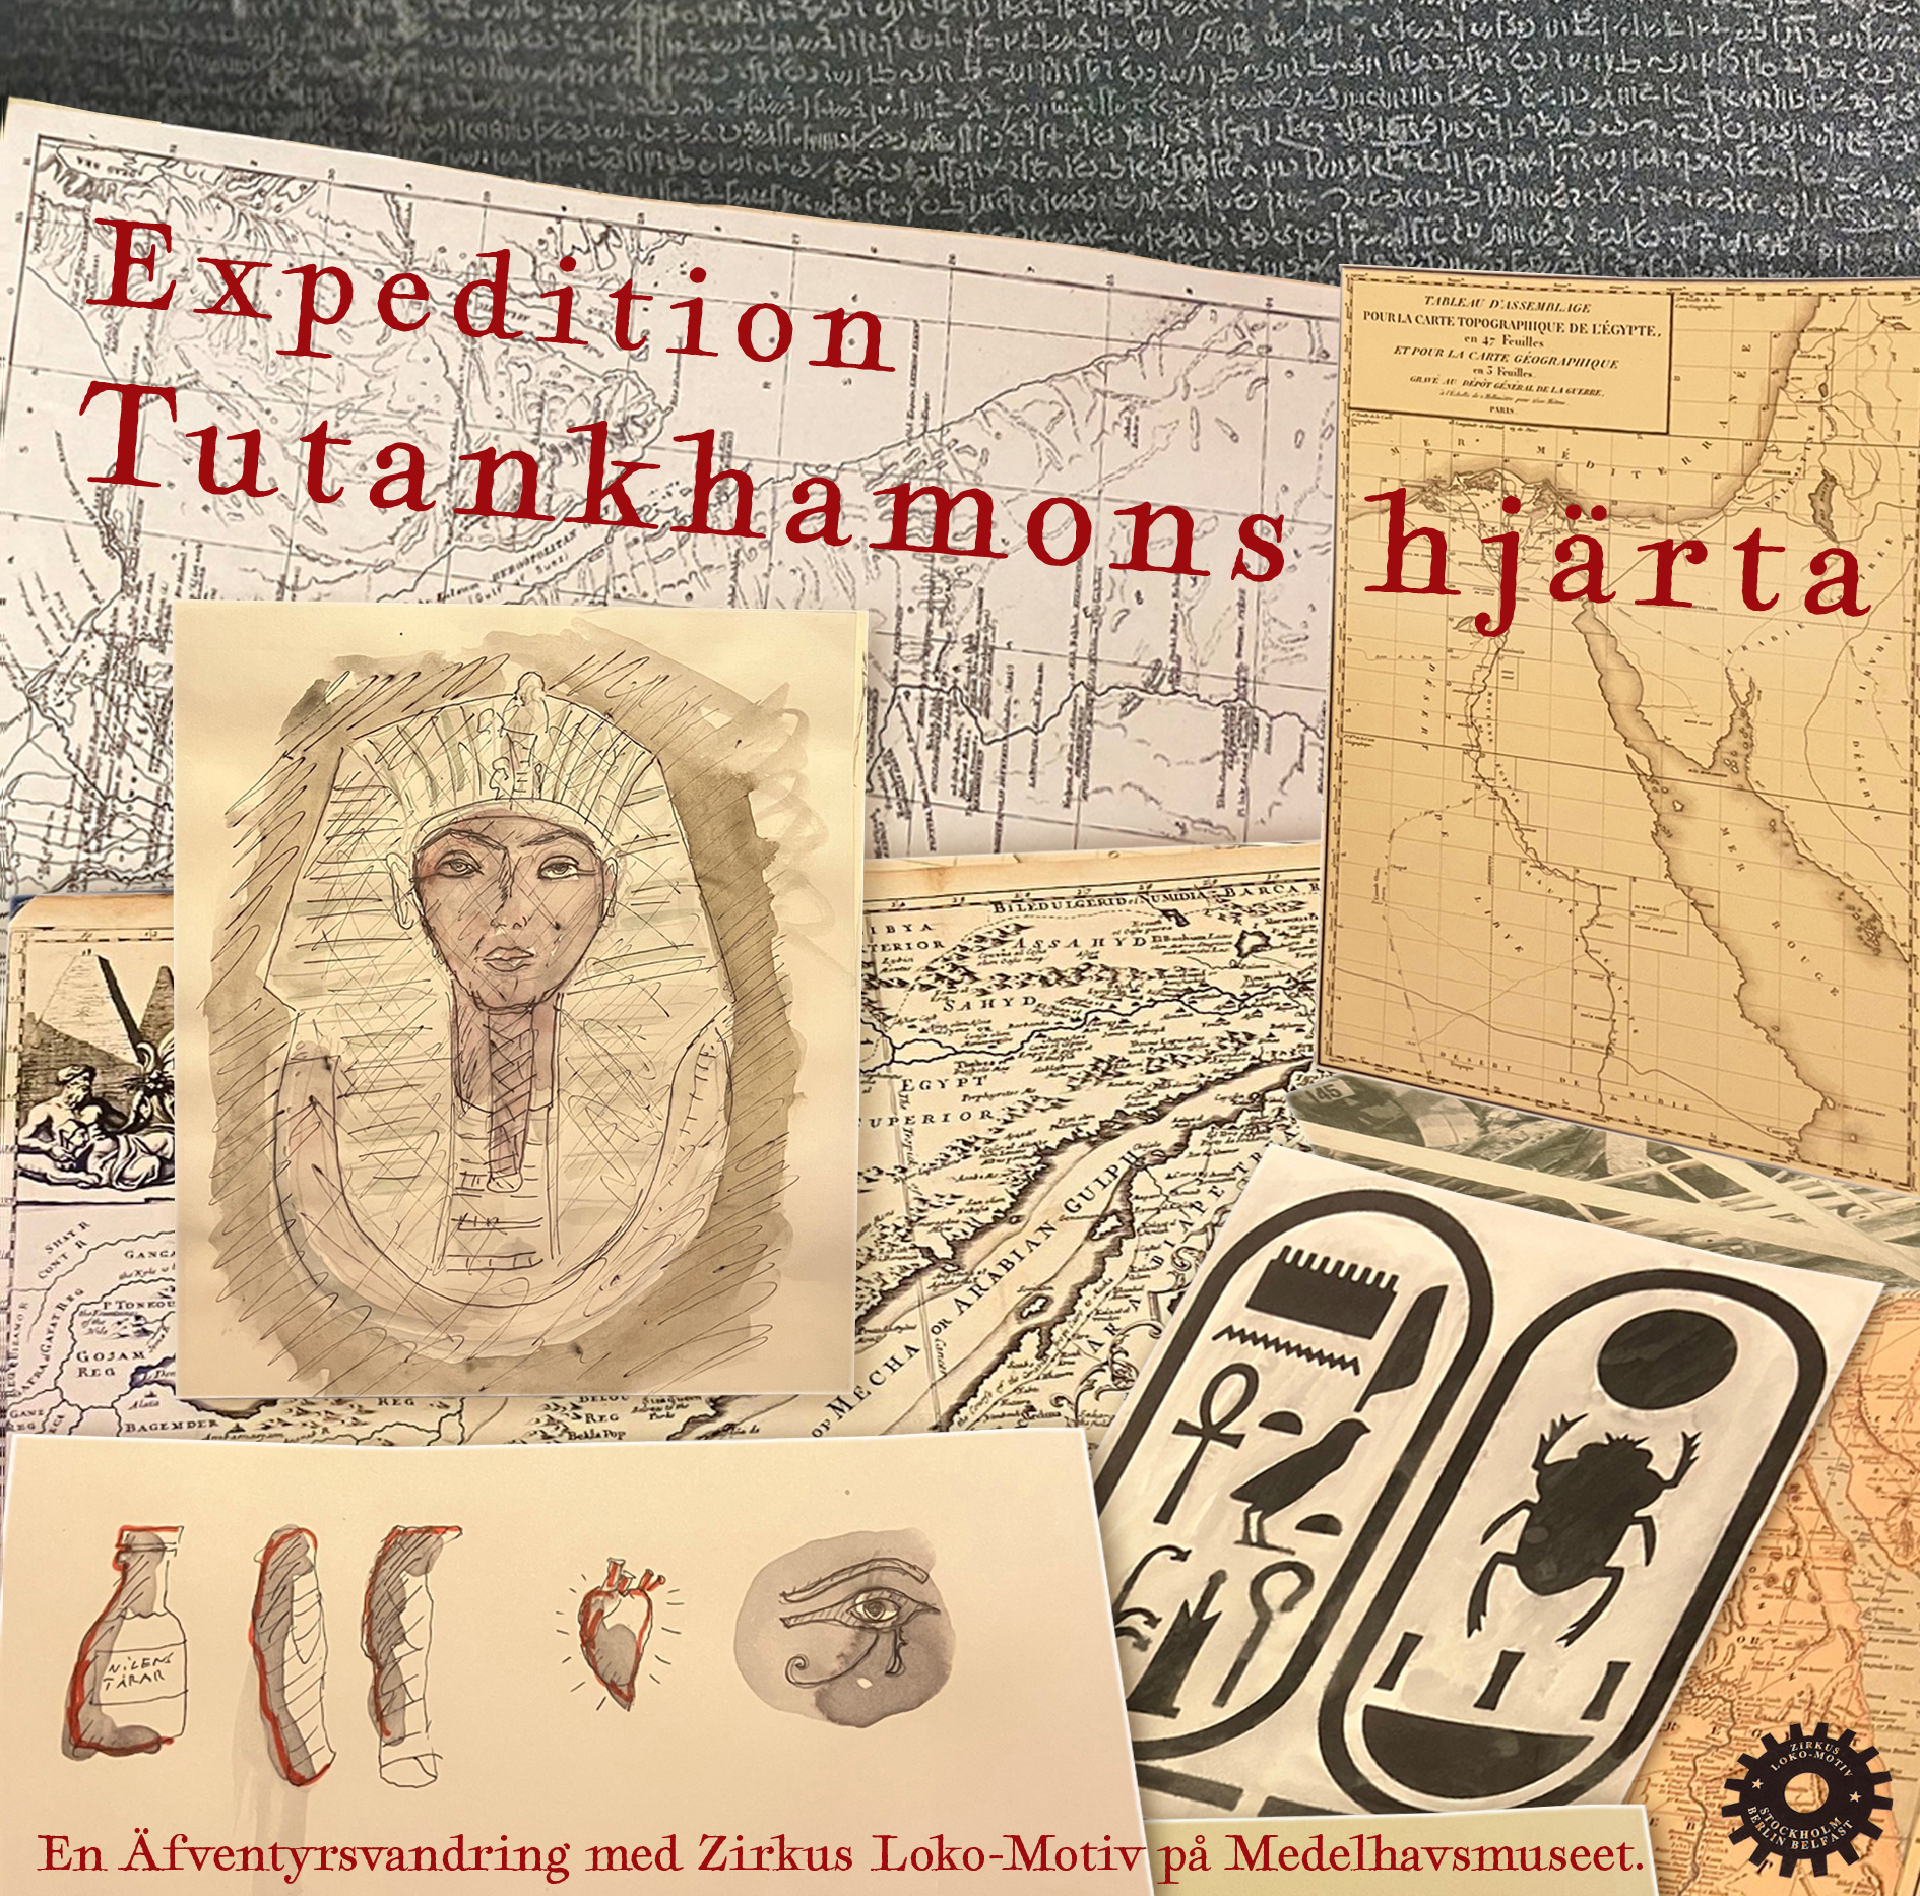 Expedition Tutankhamons hjärta flyer